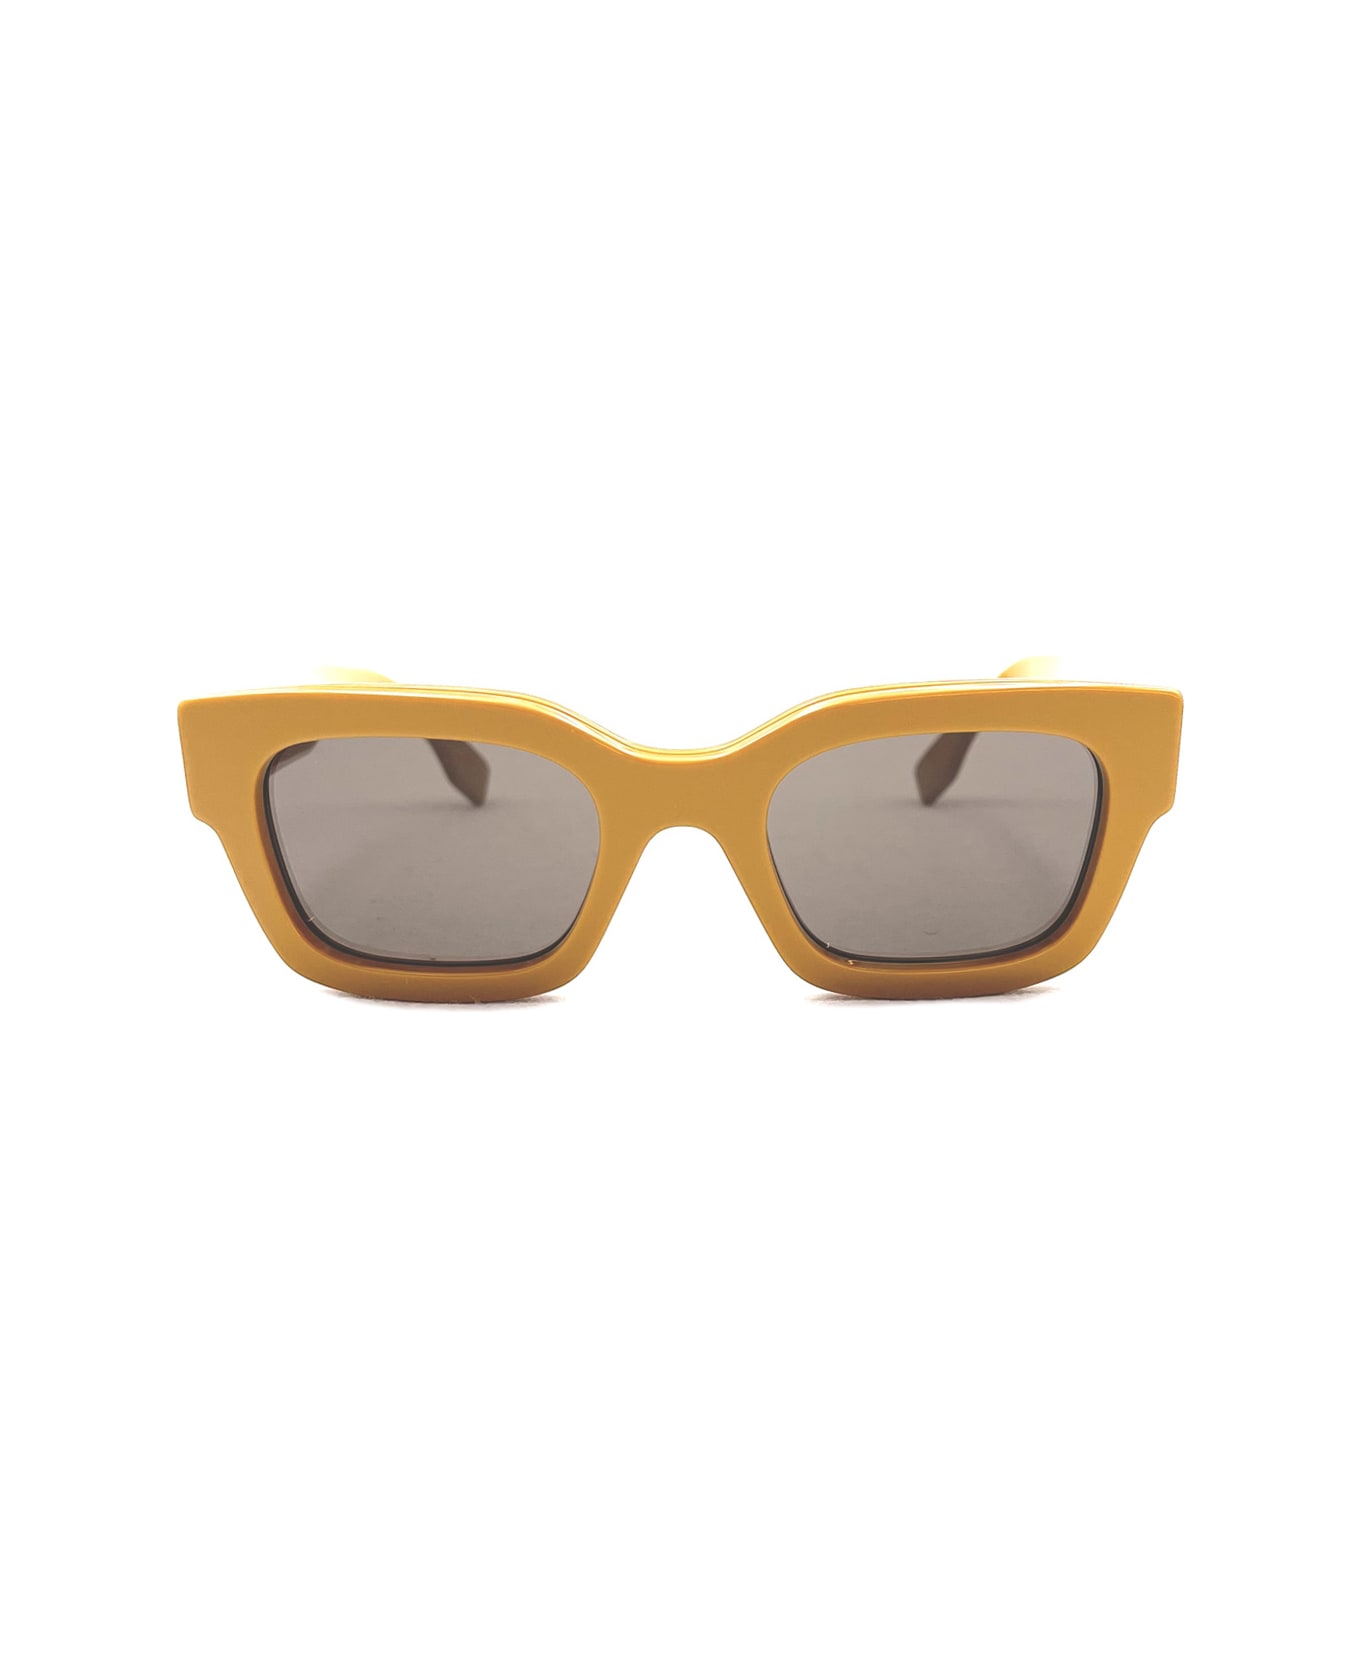 Fendi Eyewear Fe40119i 39e Sunglasses - Giallo サングラス